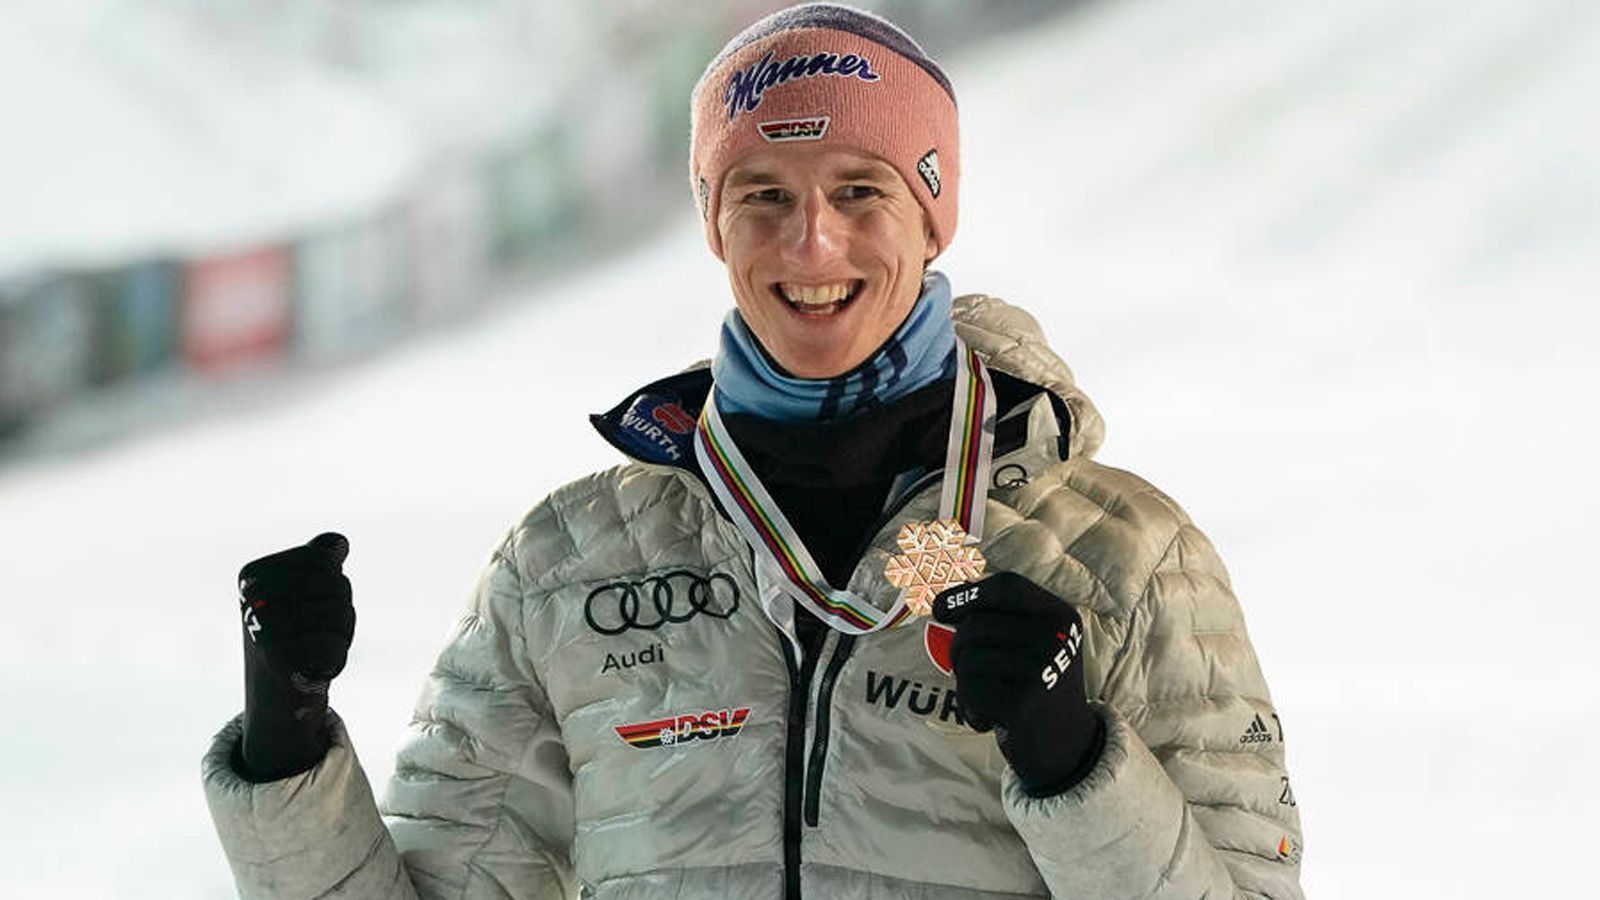 
                <strong>Karl Geiger   </strong><br>
                Auch Karl Geiger zählt zu den großen deutschen Stars im Skisprung. Der Weltmeister-Titel im Skifliegen 2020 in Planica war einer der größten Erfolge seiner Karriere. Sechs Weltcups hat er bereits gewonnen. Vergangenes Jahr belegte er bei der Vierschanzentournee den dritten Platz. Seine Corona-Erkrankung warf ihn allerdings zurück, sodass er lediglich den 11. Platz im Weltcupranking belegt. Findet er seine Form aus der vorherigen Zeit, ist mit ihm ganz vorne zu rechnen.
              